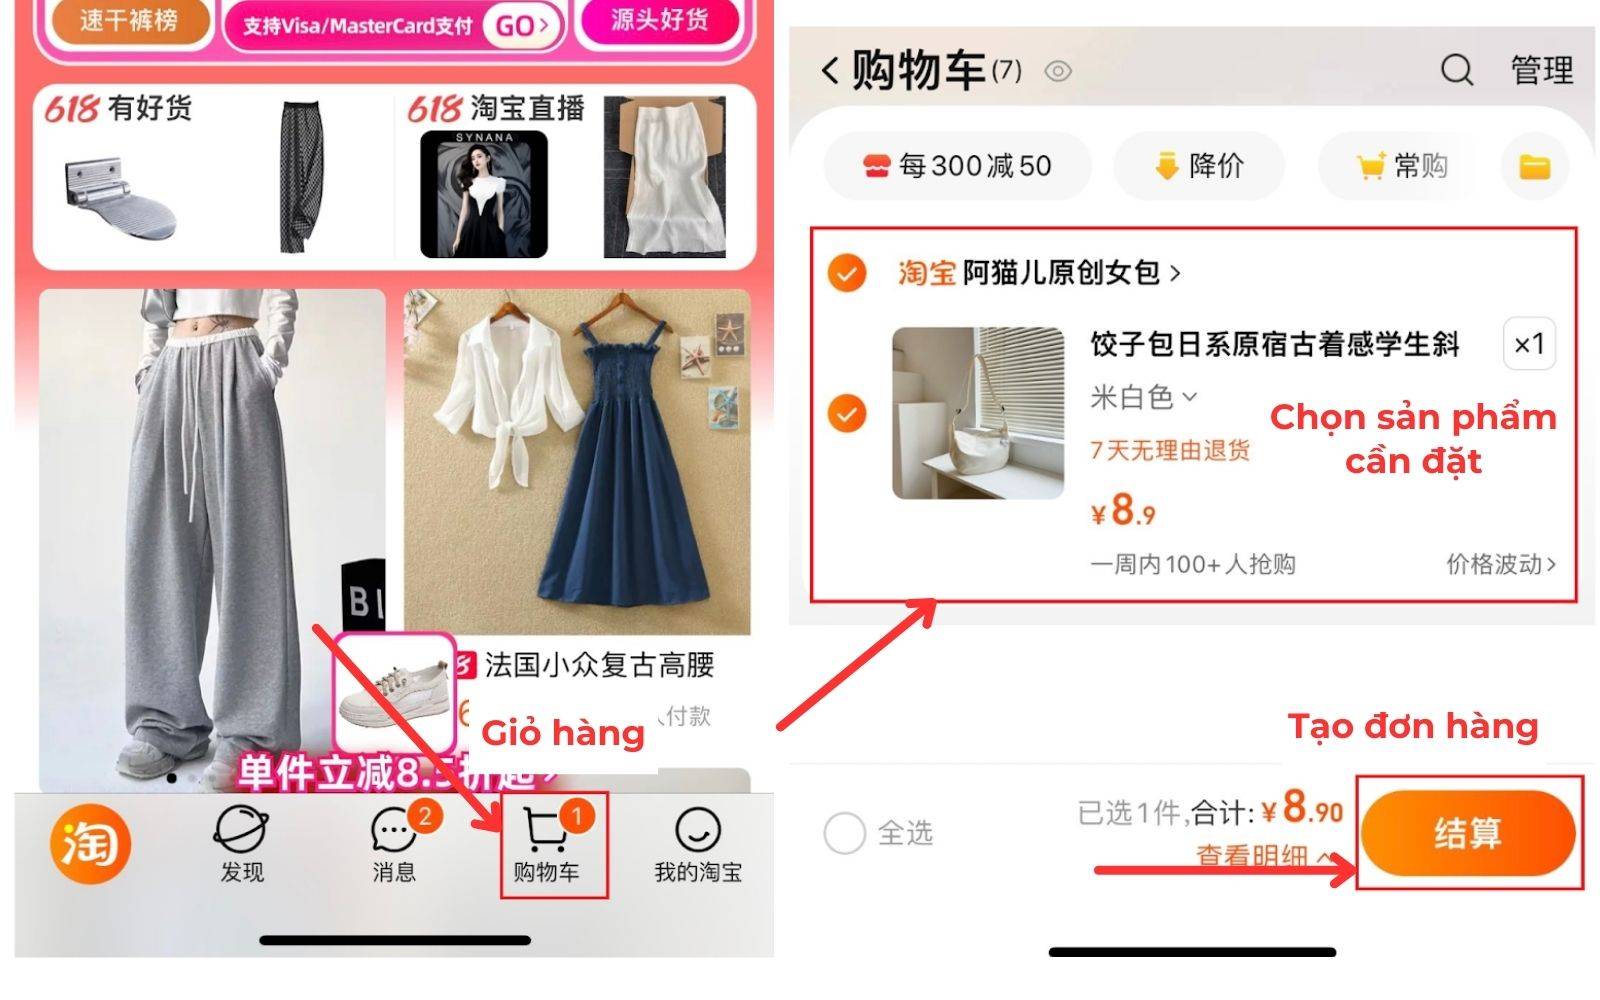 Tiến hành chọn sản phẩm cần đặt để tạo đơn order hàng trên Taobao